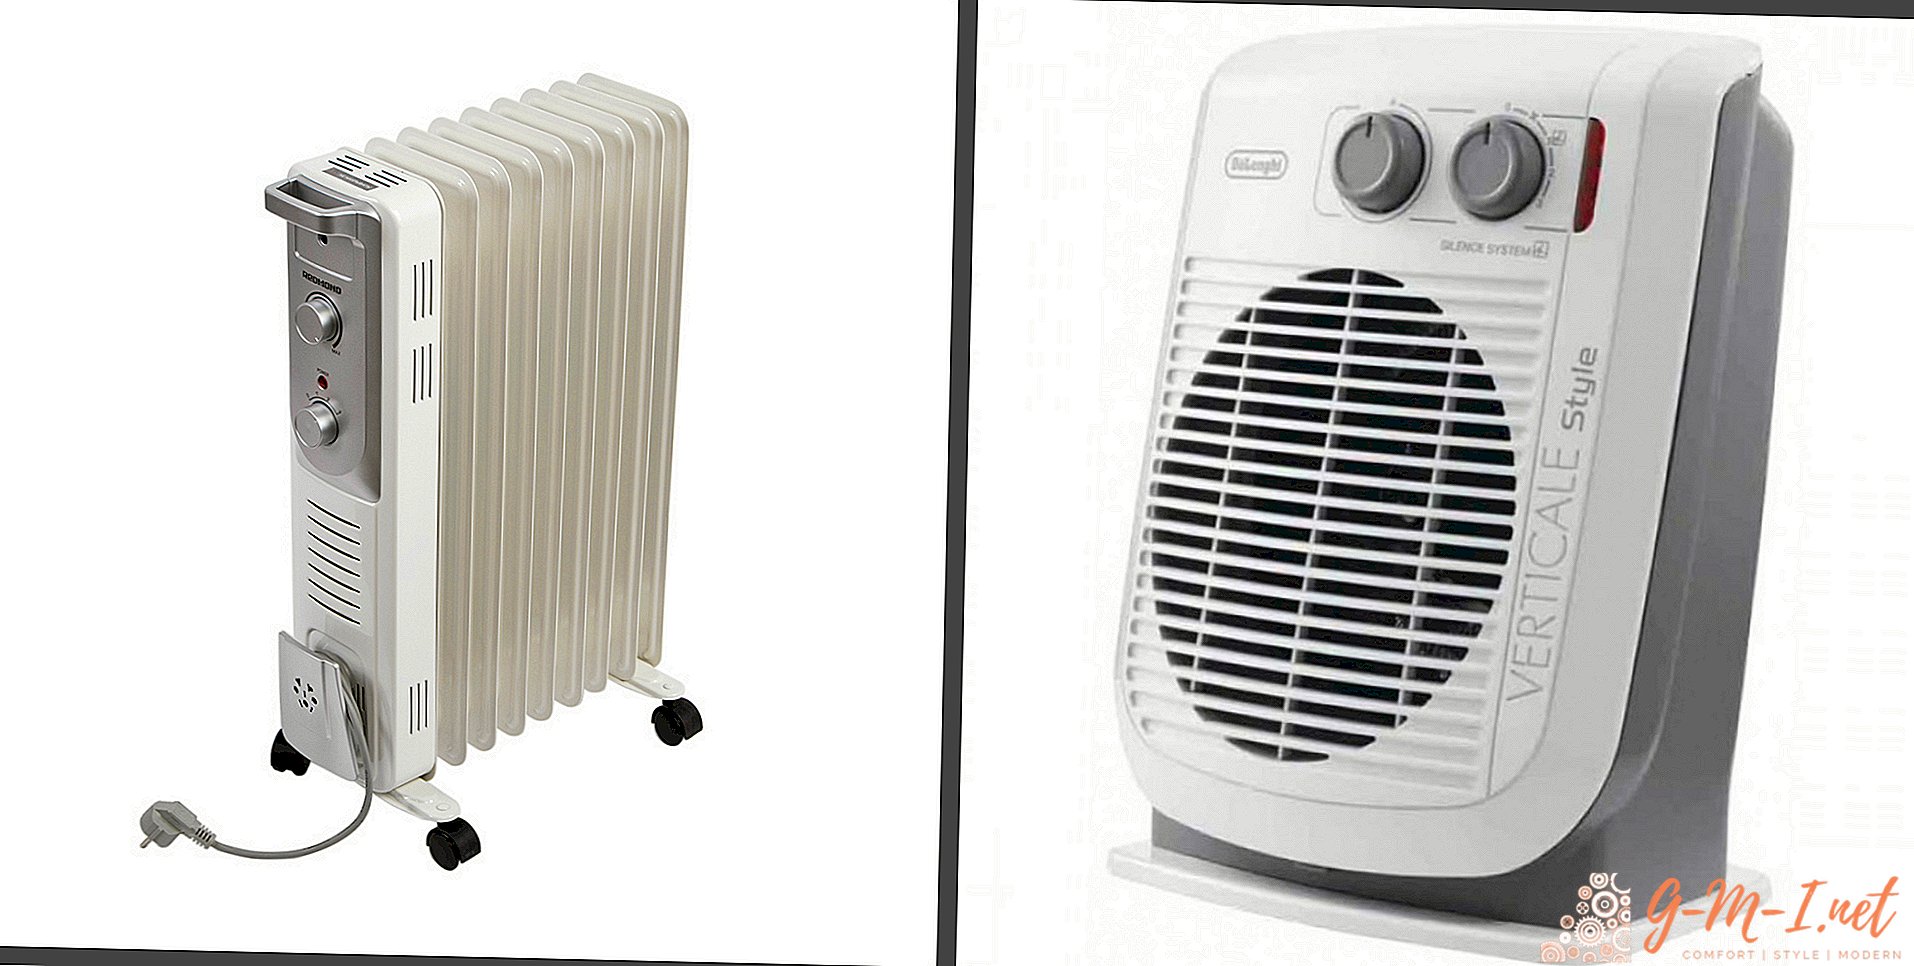 What is better fan heater or oil heater